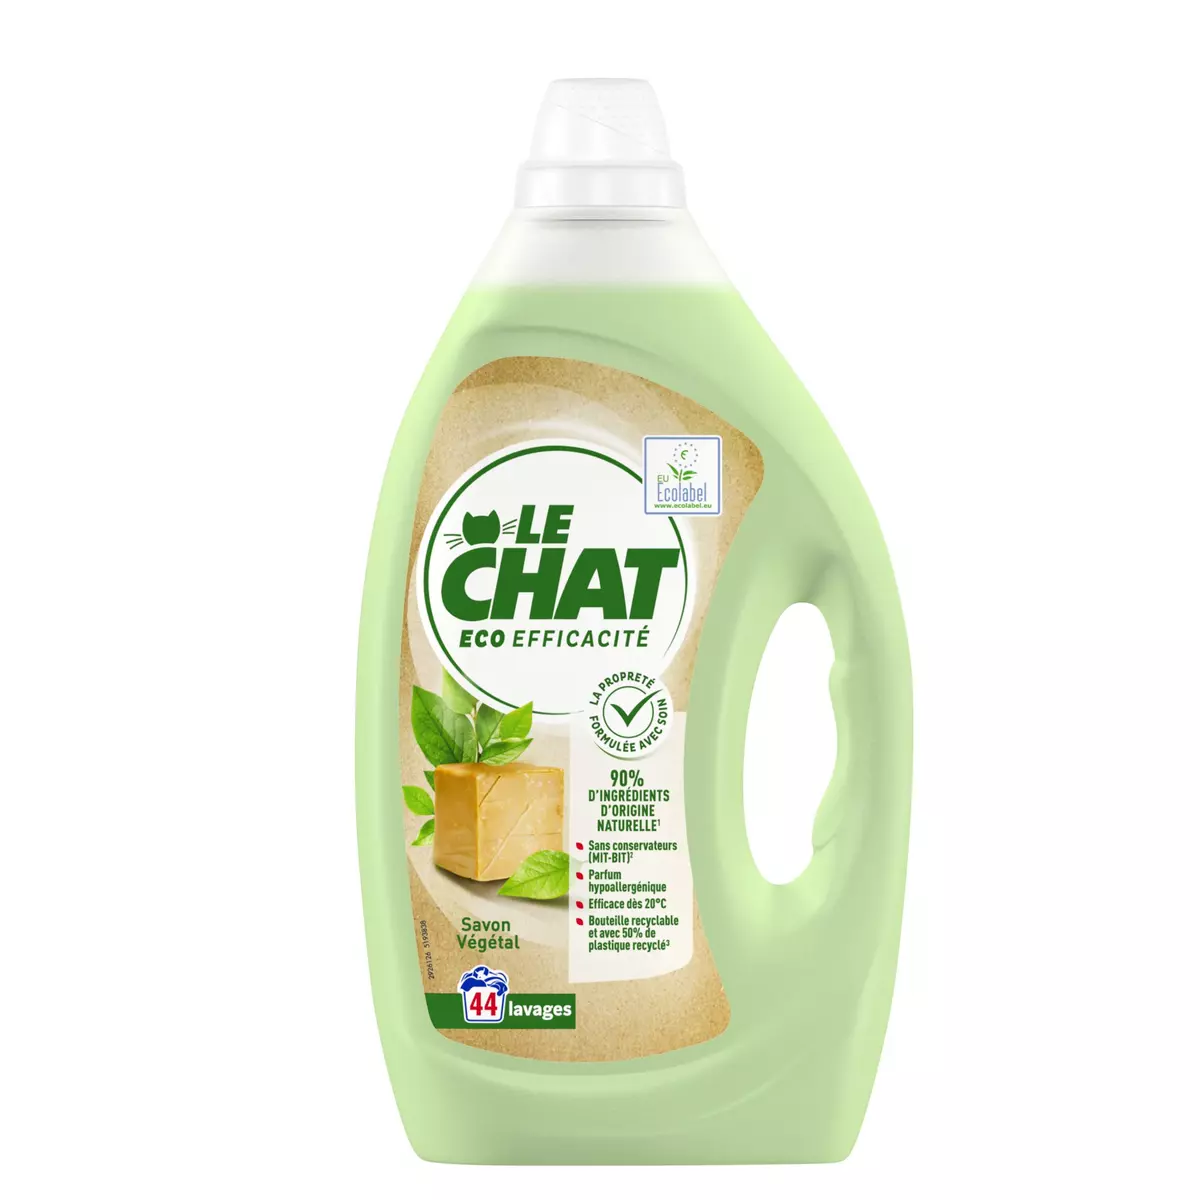 LE CHAT Eco efficacité lessive liquide 44 lavages 1,98l